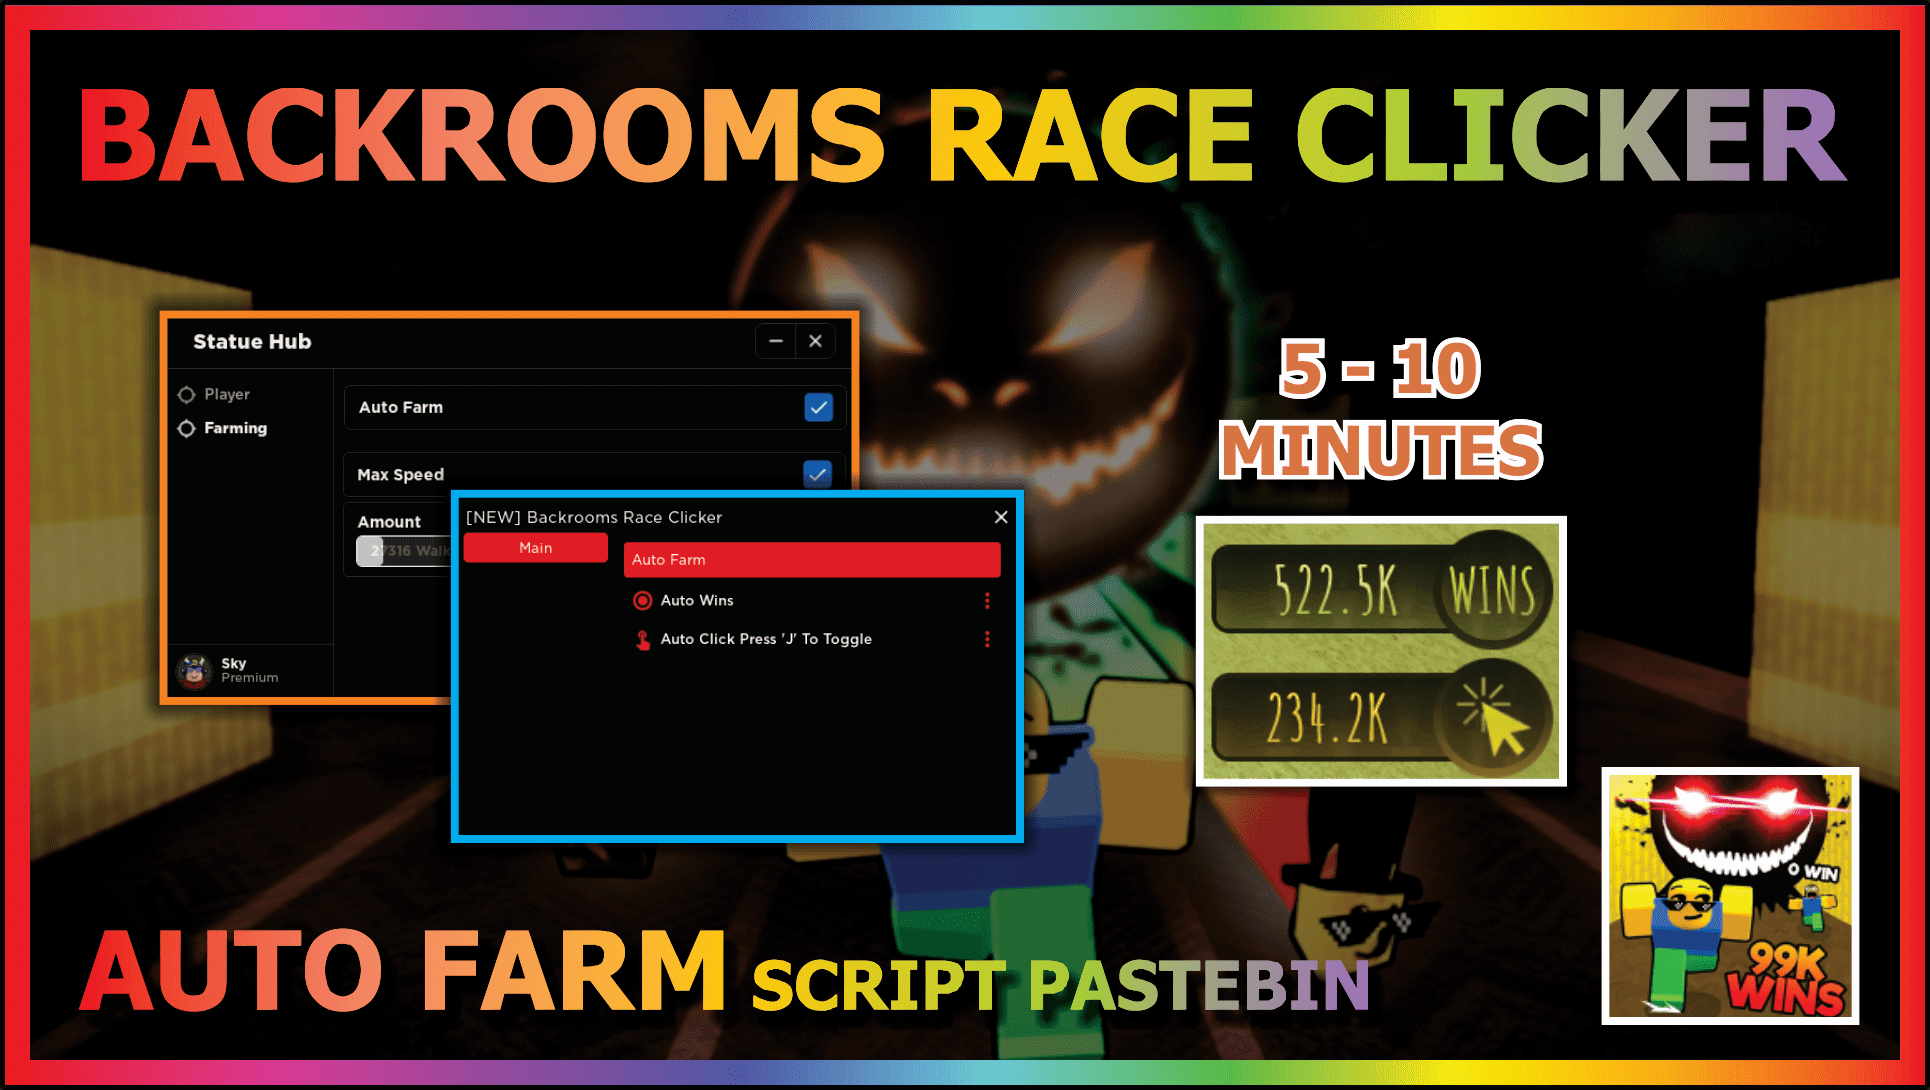 Race Clicker script pastebin 